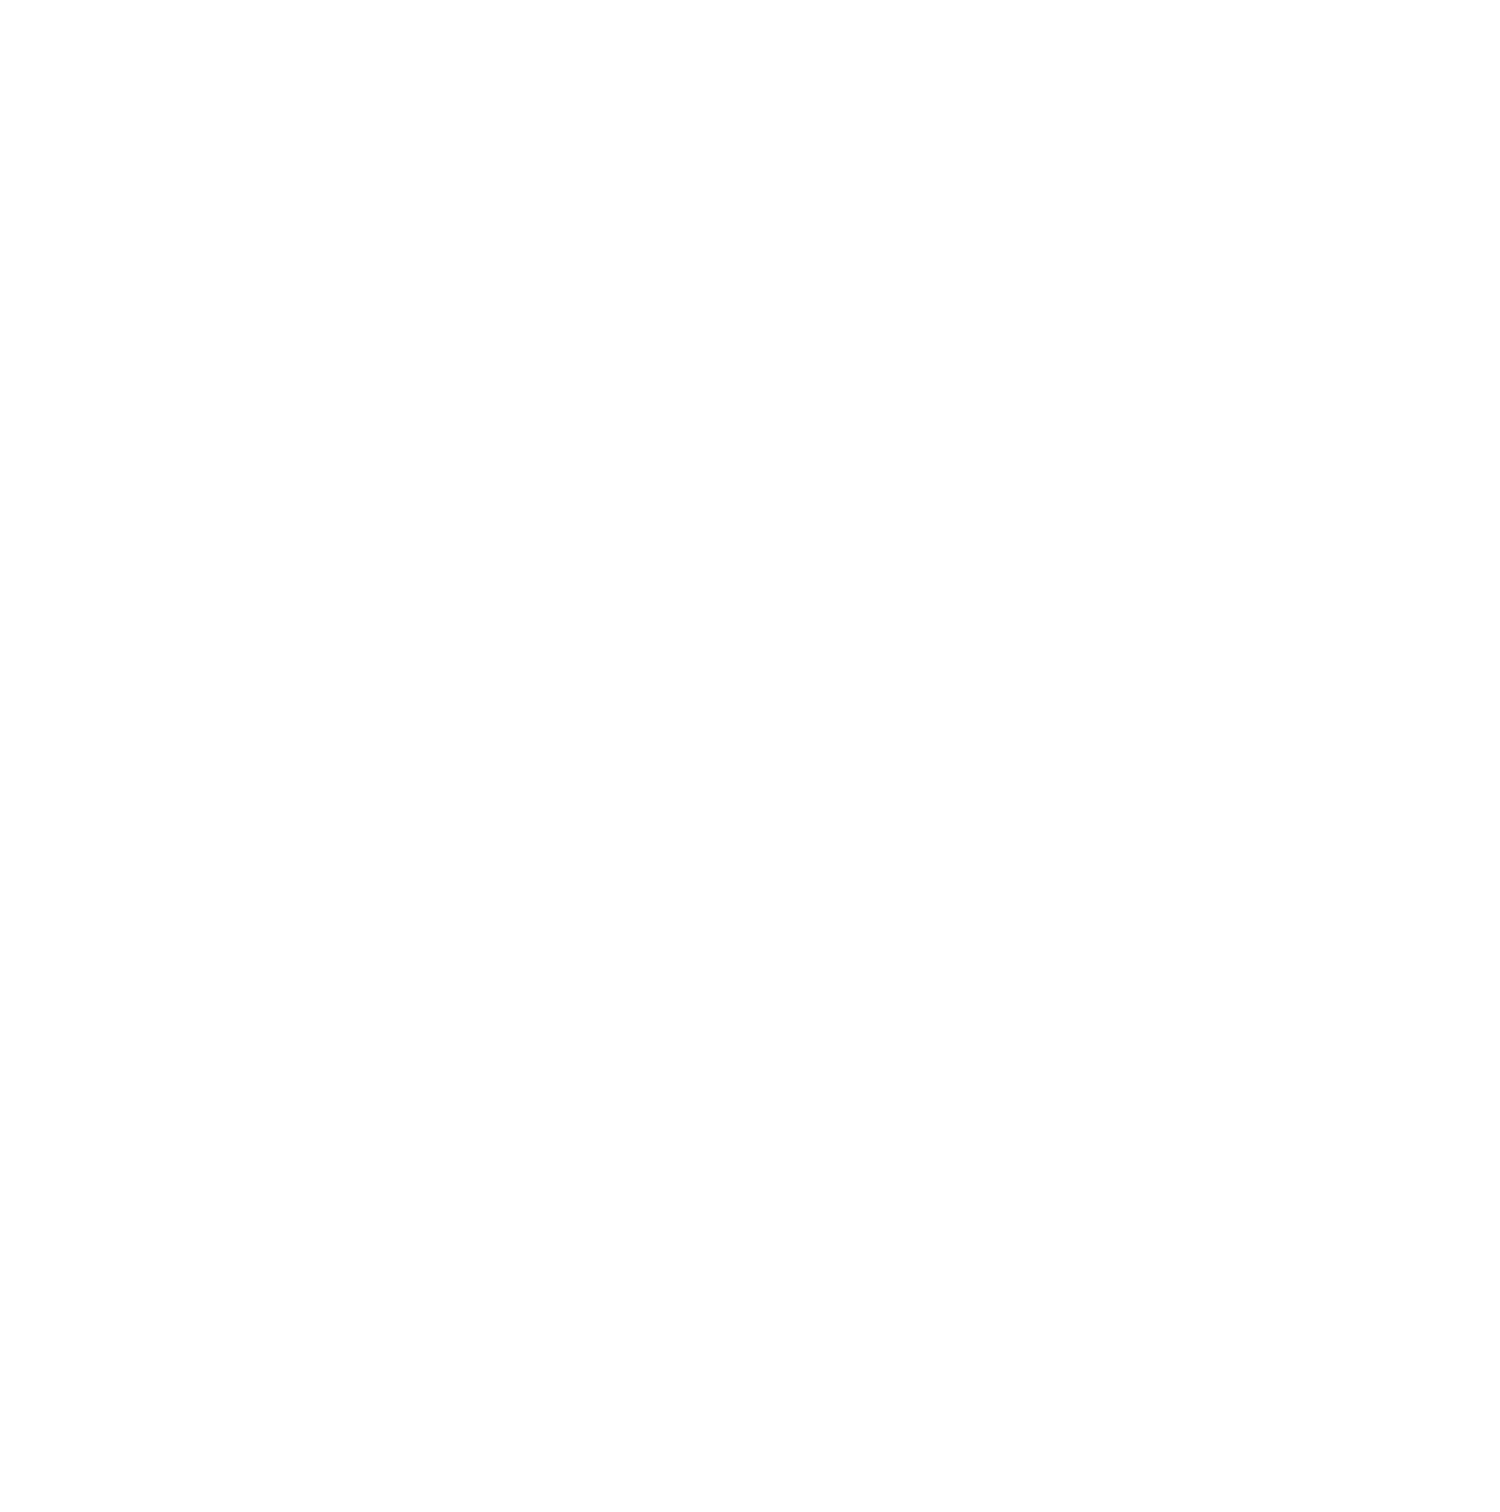 Ed Allen Designs